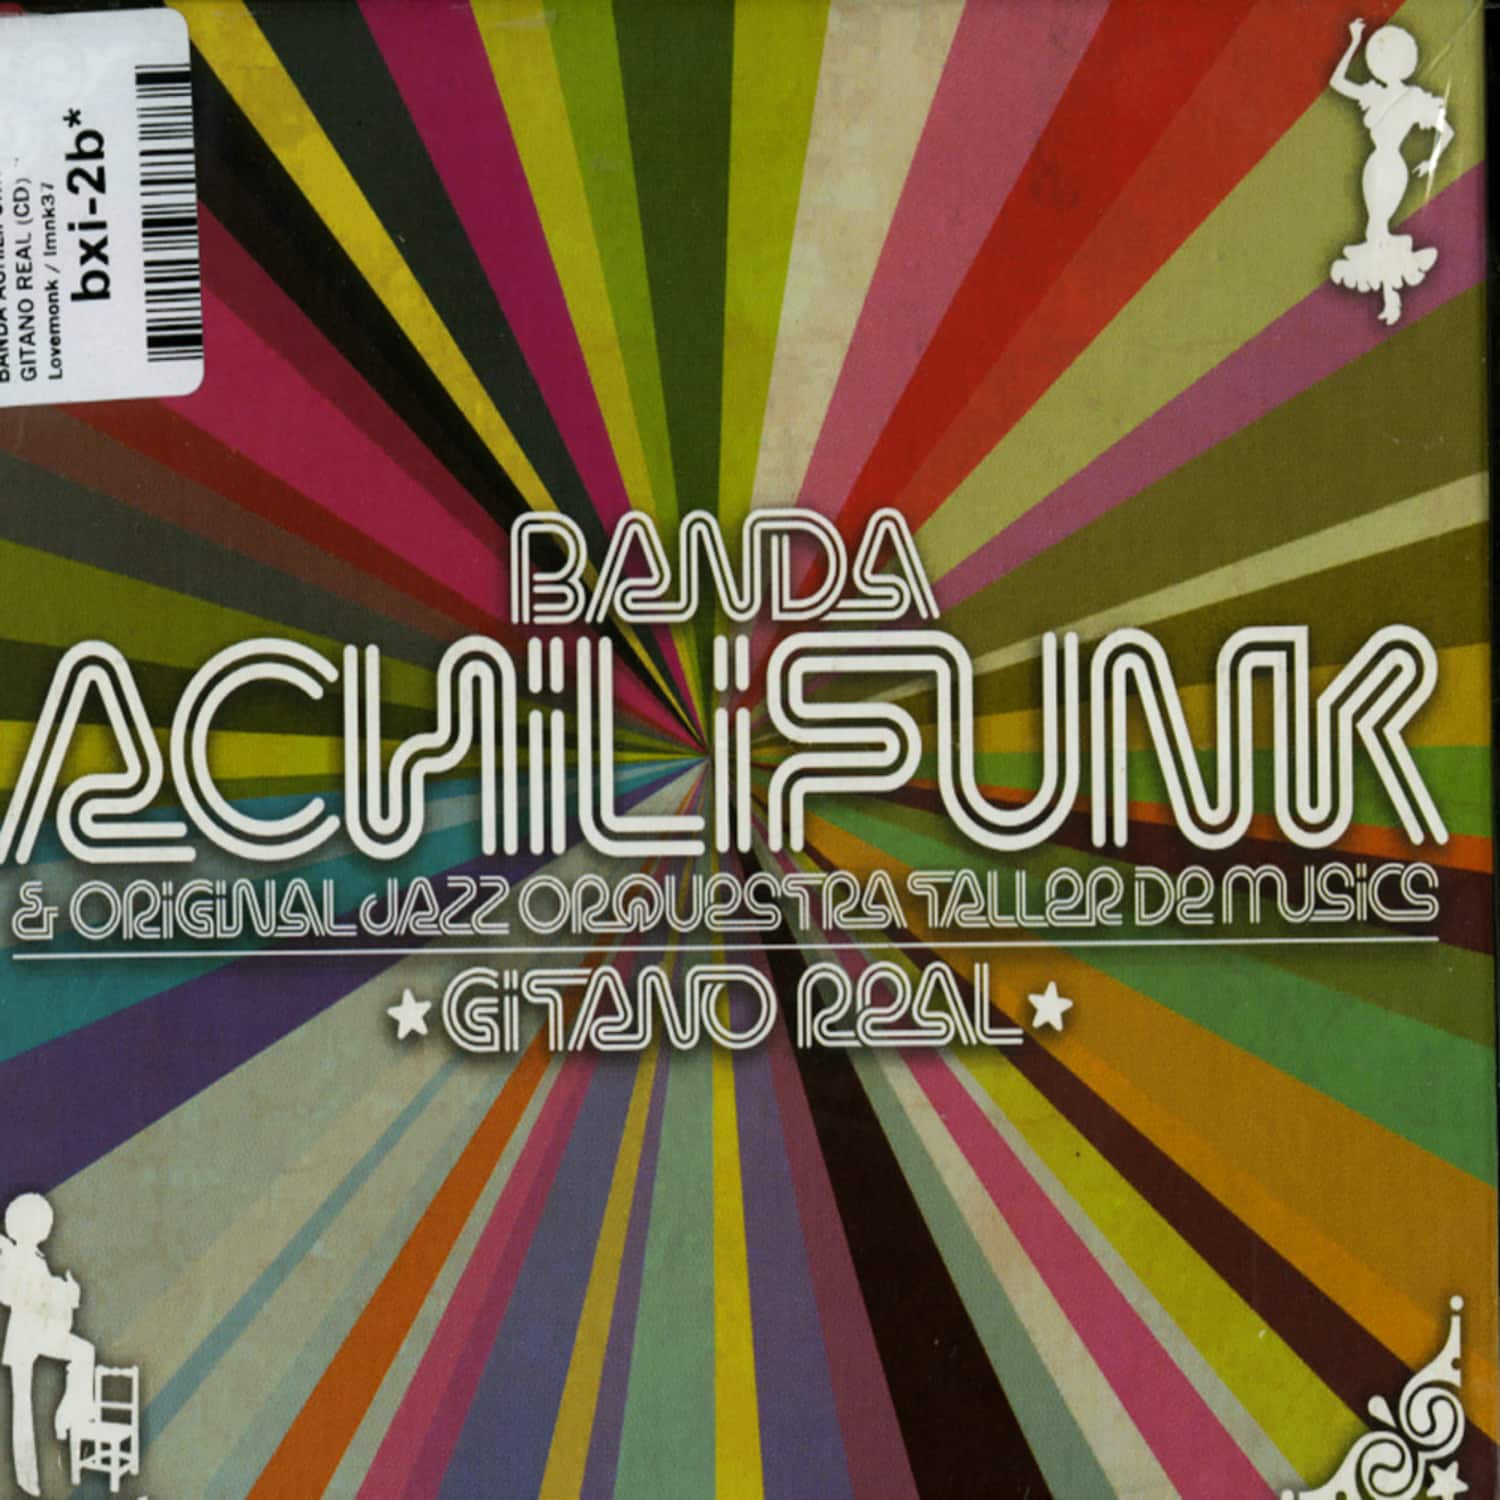 Banda Achilifunk - GITANO REAL 